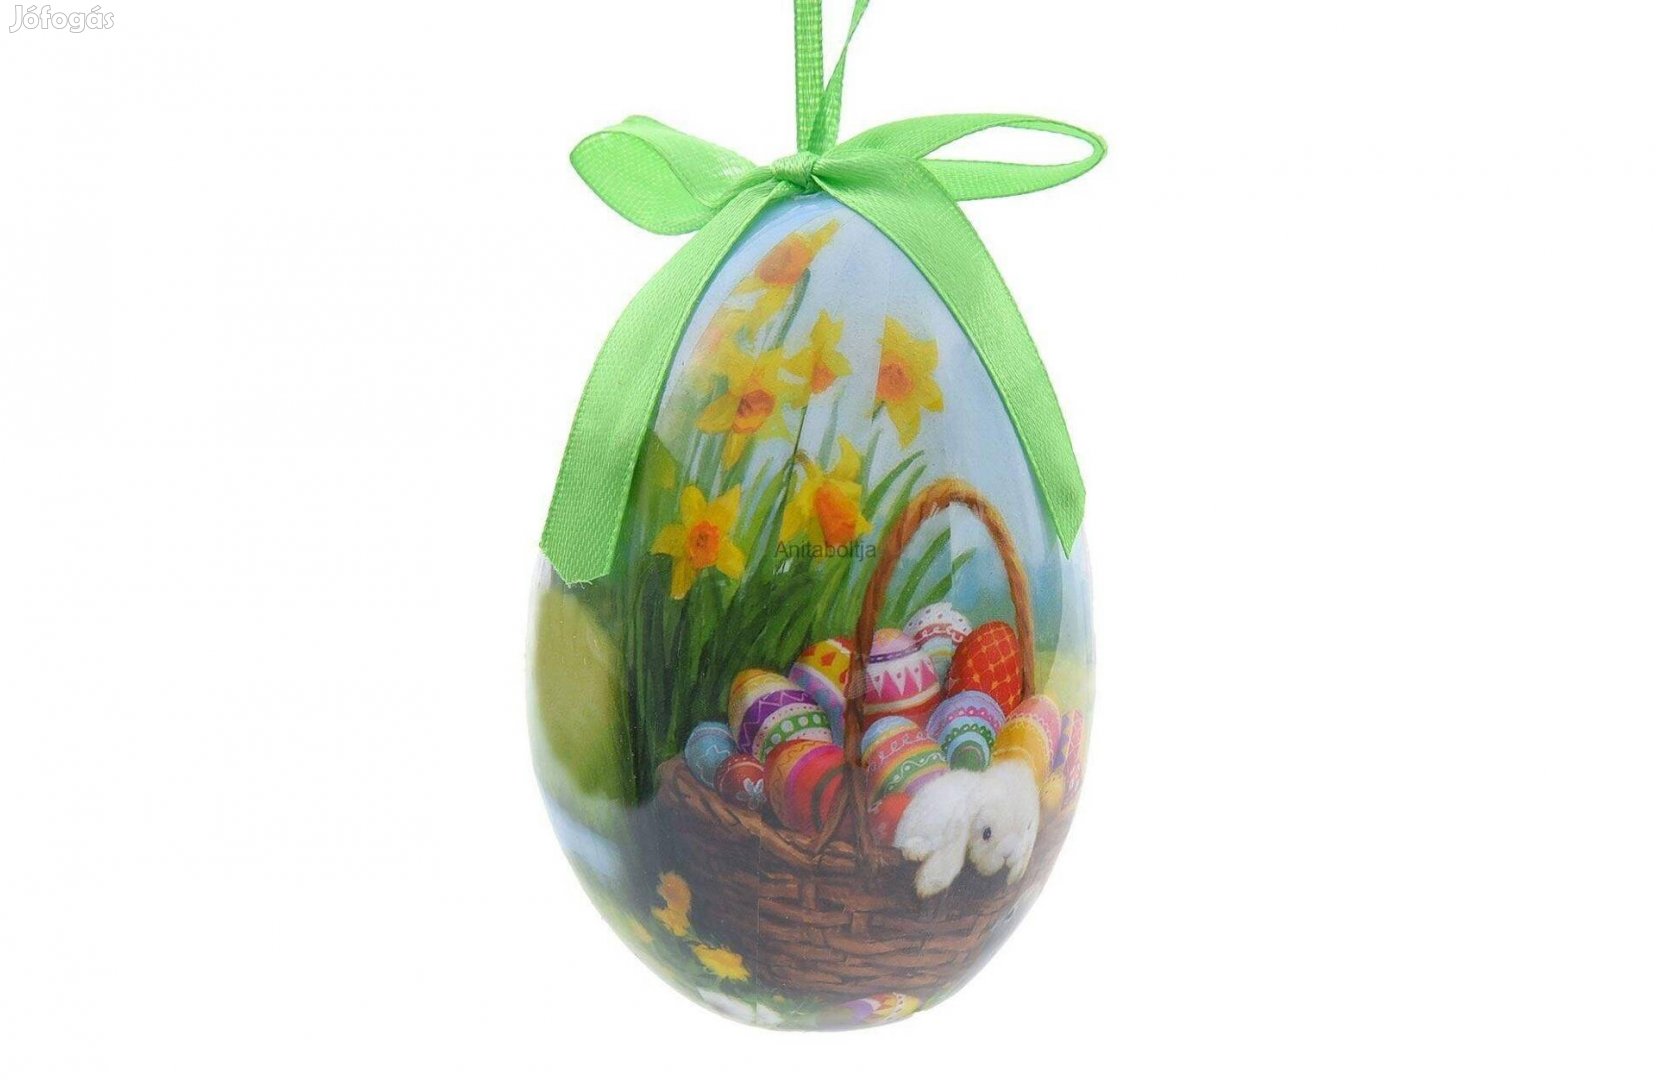 Húsvéti tojás - Nárciszokkal 10 cm